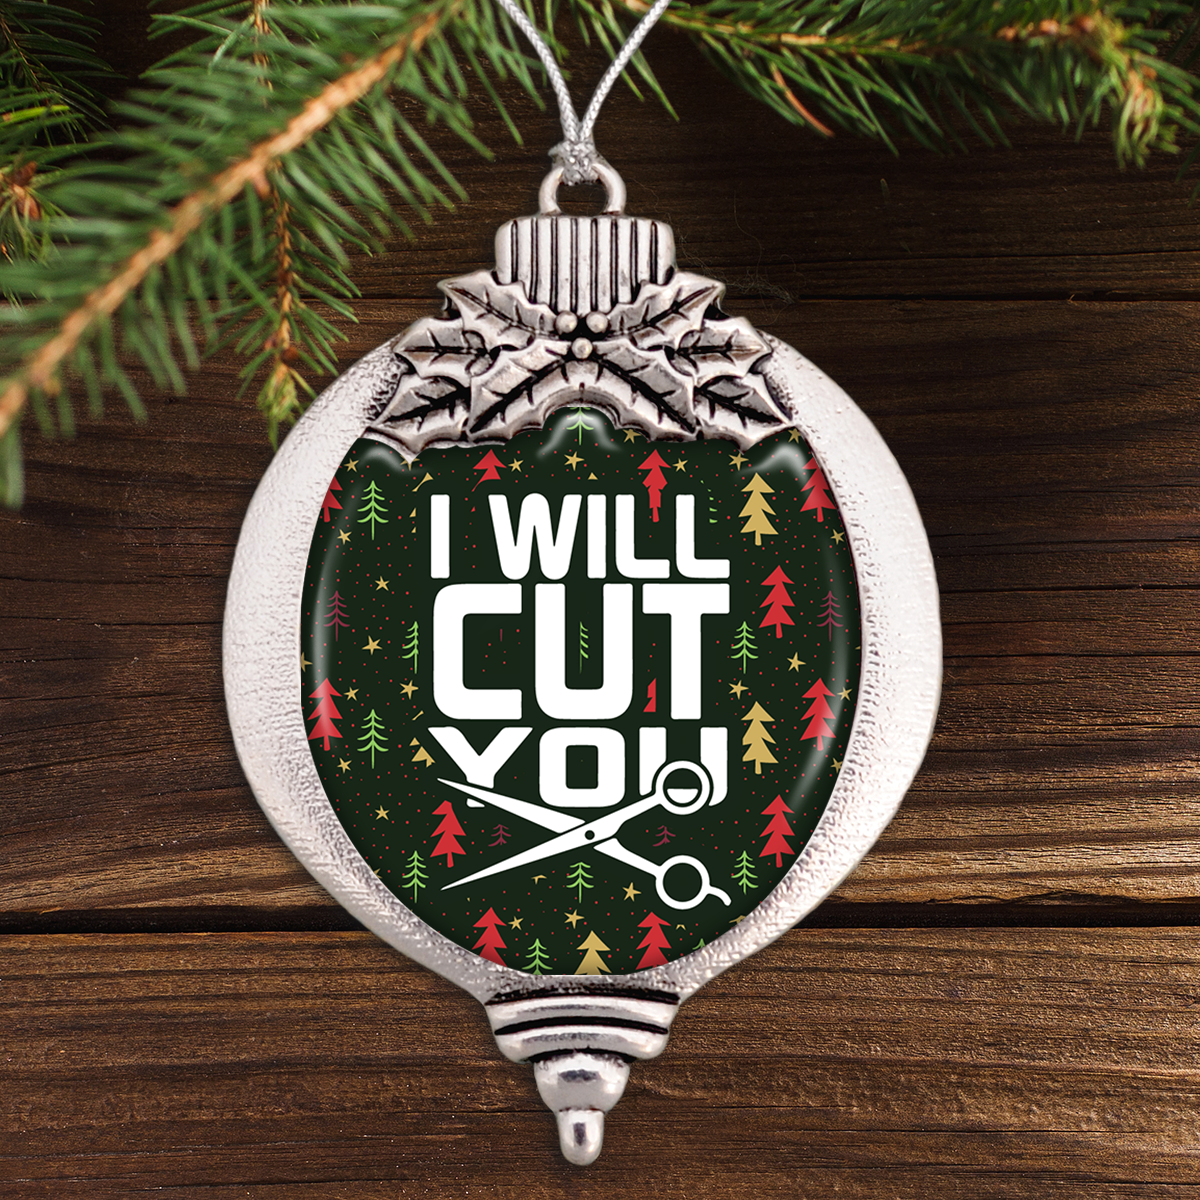 I Will Cut You - Hairstylist Bulb Ornament